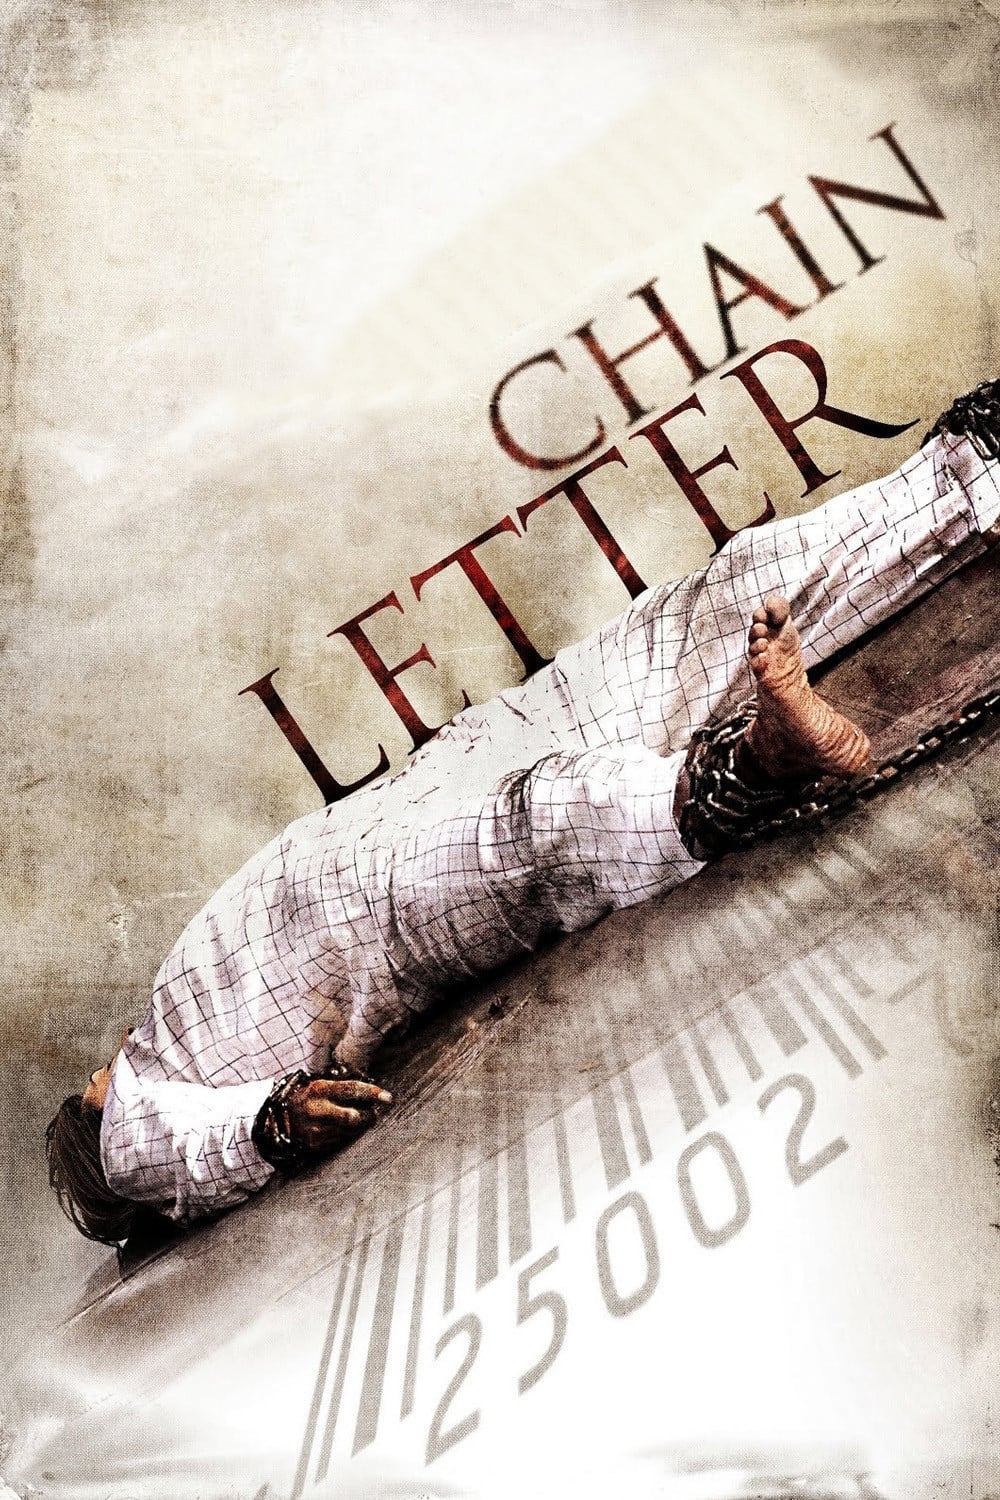 Chain Letter [Sub-ITA] (2010)